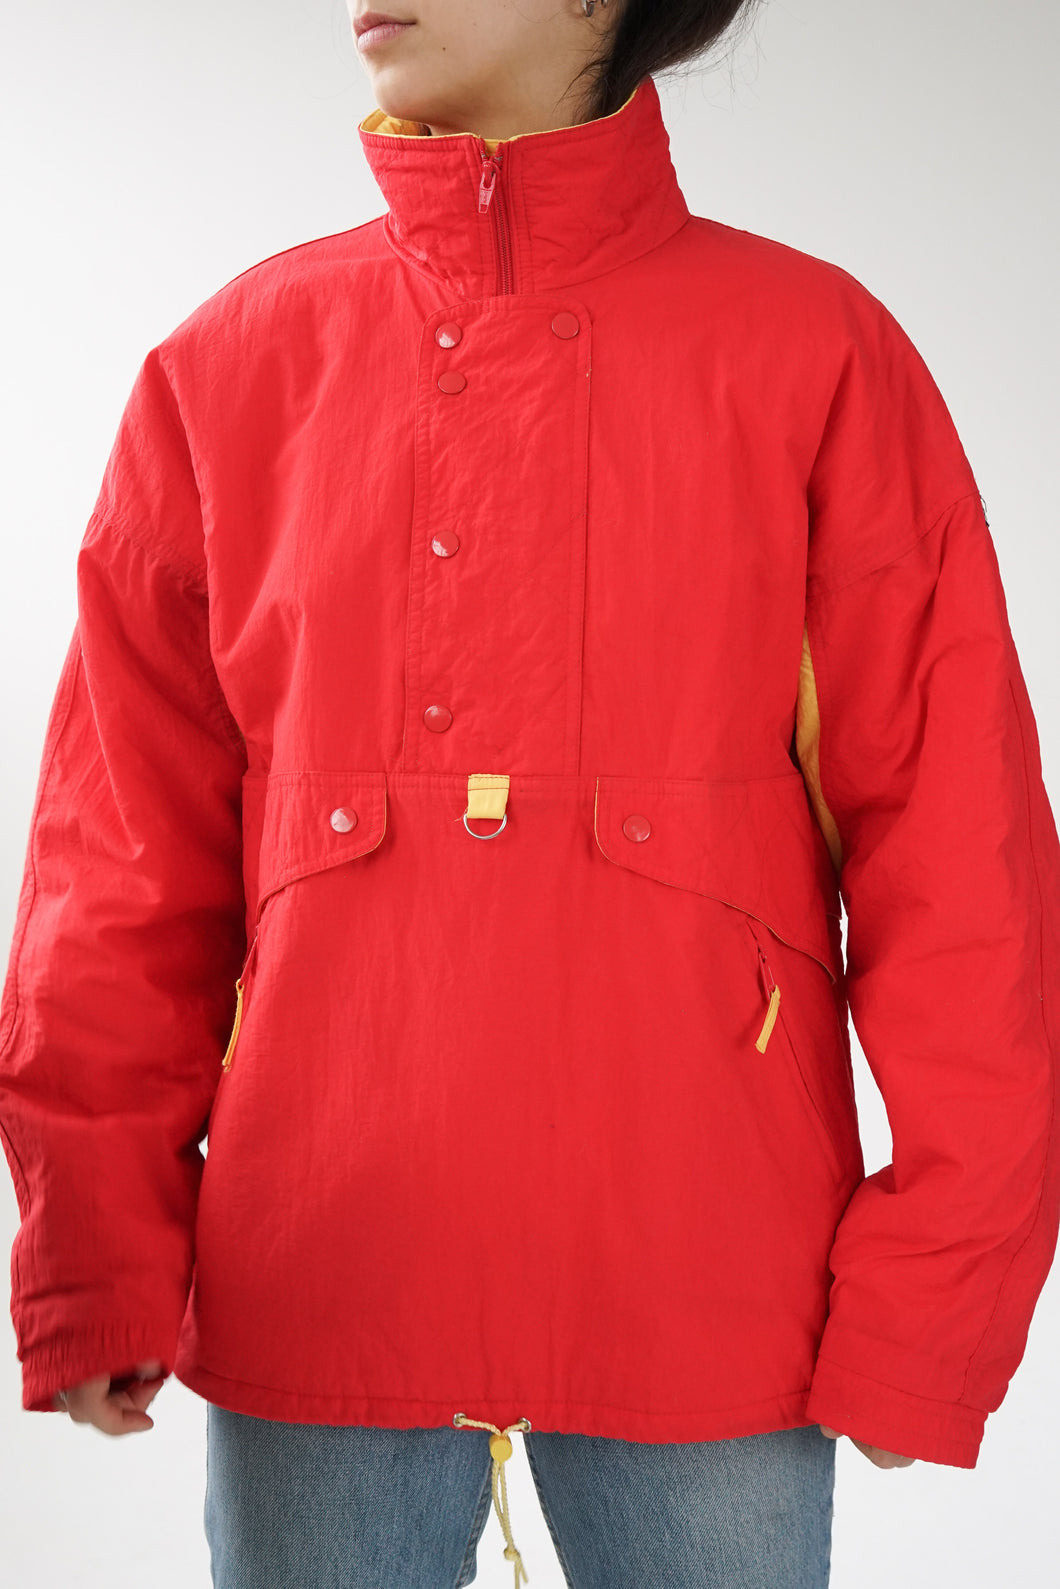 Manteau léger Lifa rouge et jaune taille M-L